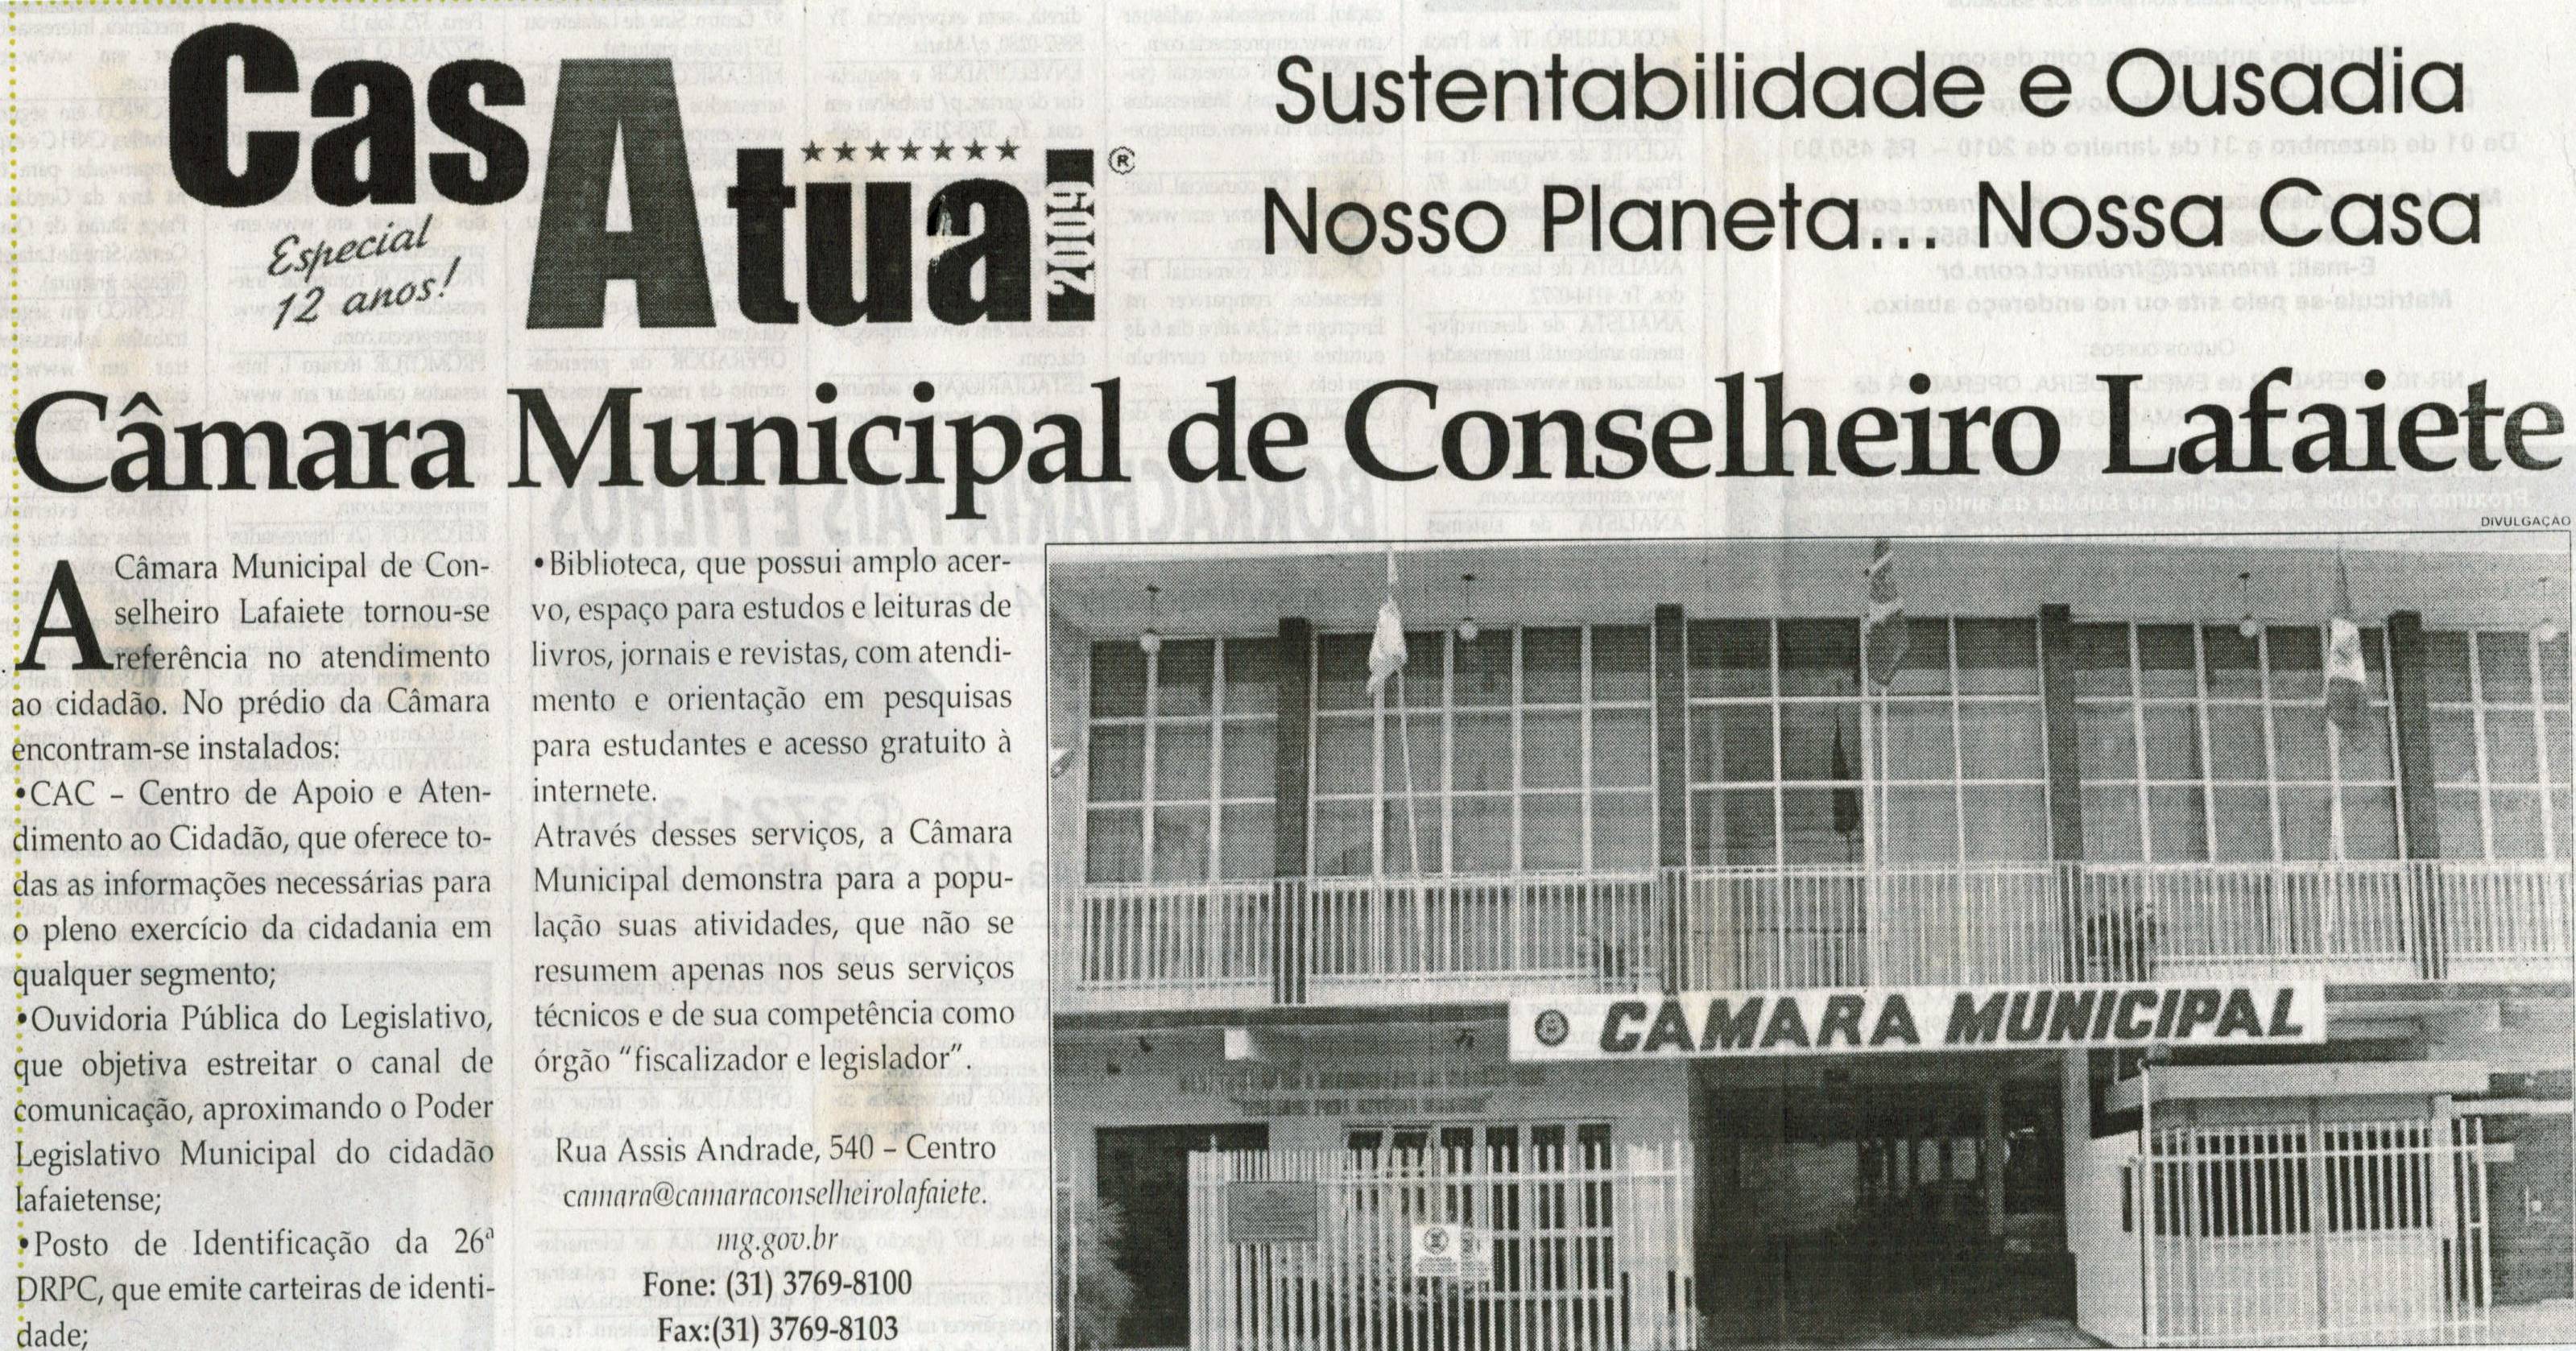 Câmara Municipal de Conselheiro Lafaiete. Jornal Correio da Cidade, Conselheiro Lafaiete,  17 out. 2009, p. 34.